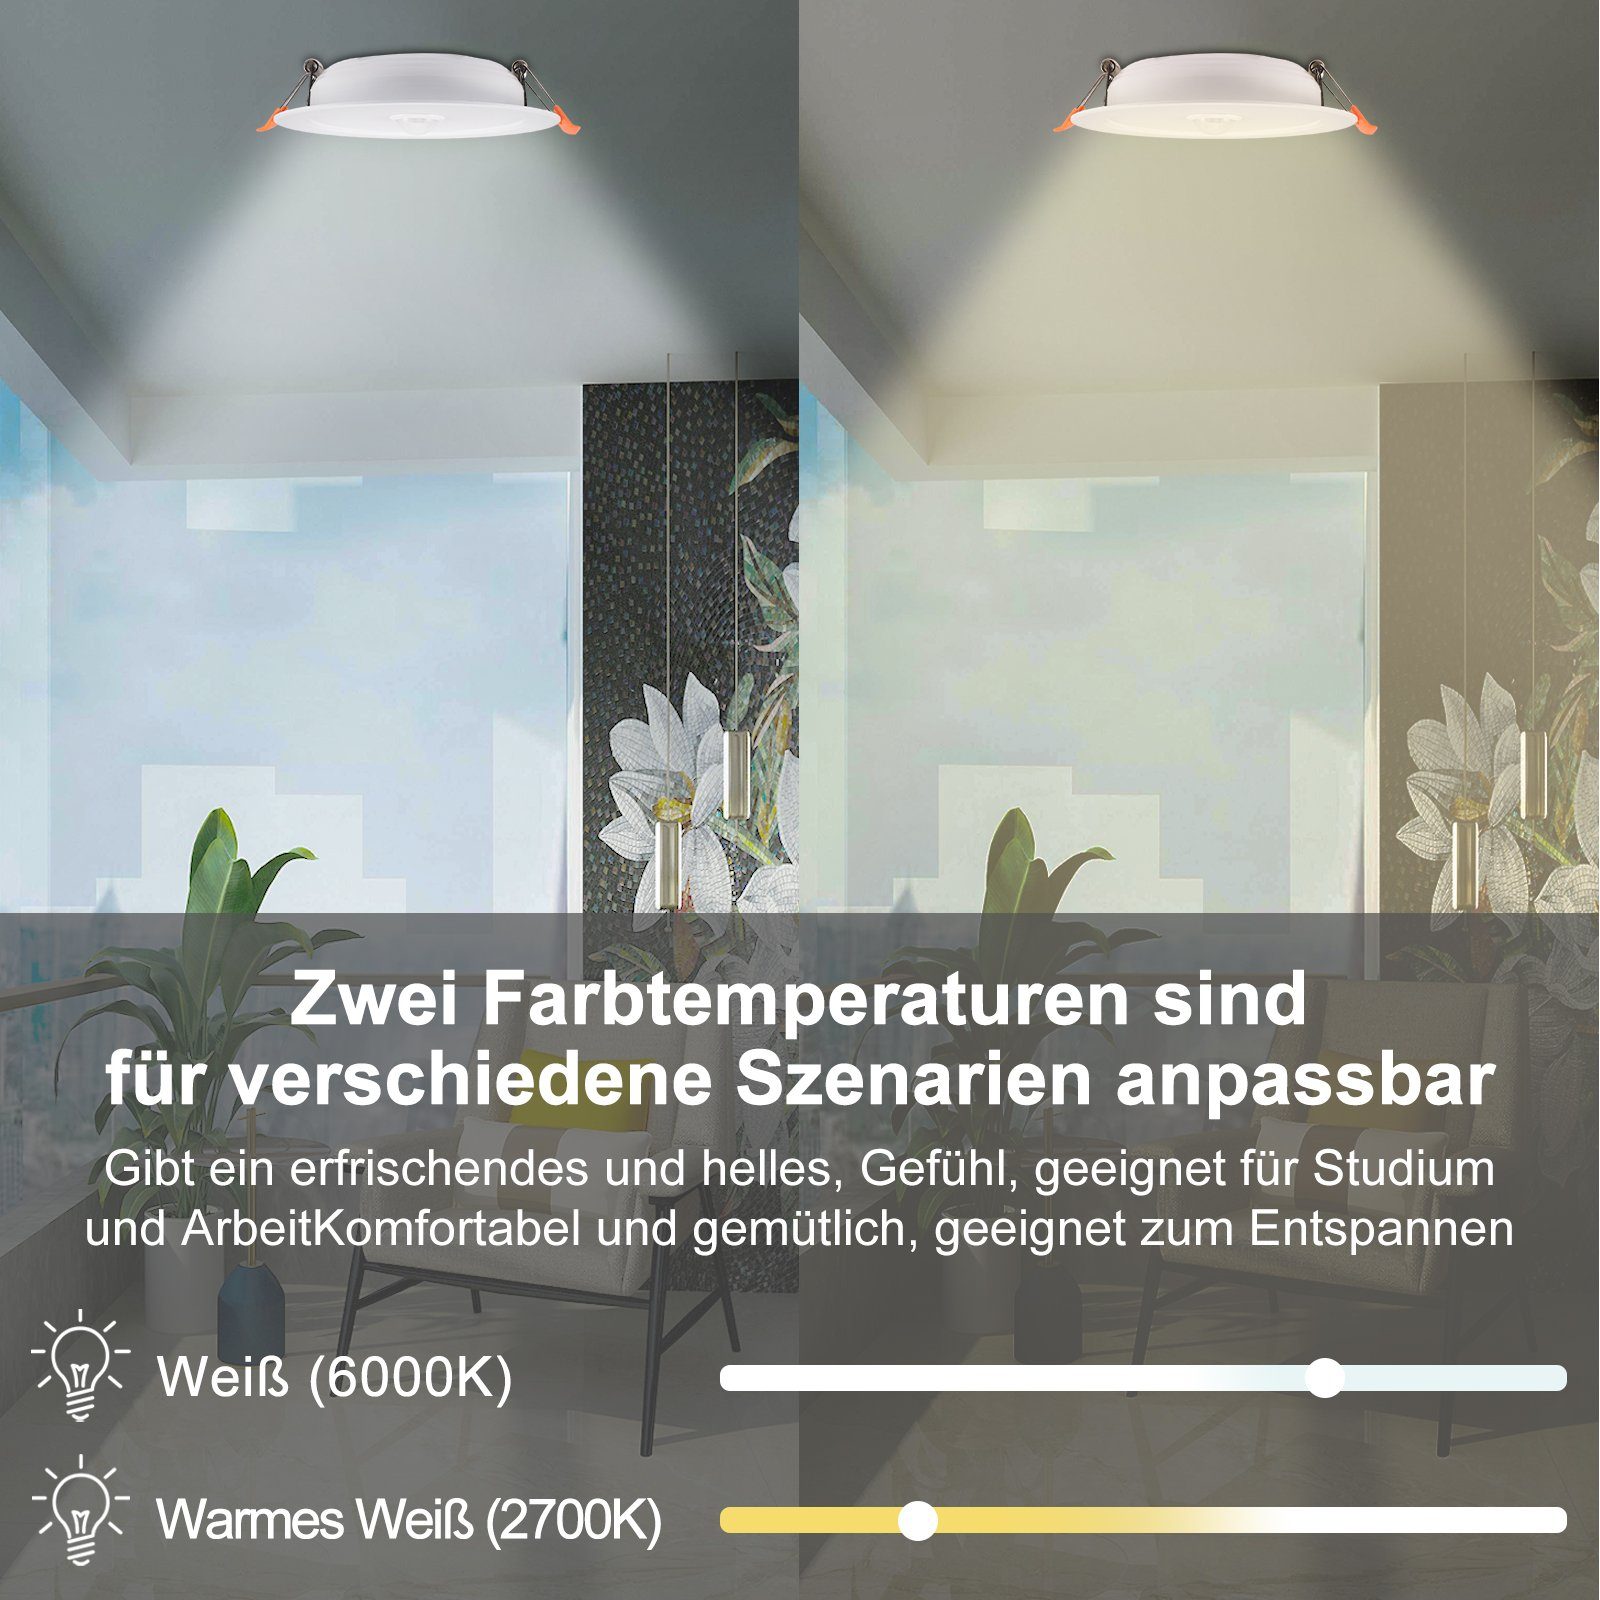 Rosnek LED Einbaustrahler Warmweiß Balkone Lagerhallen Deko, 12W, für Flure Reinweiß, Sensor-Induktion, Wohnräume